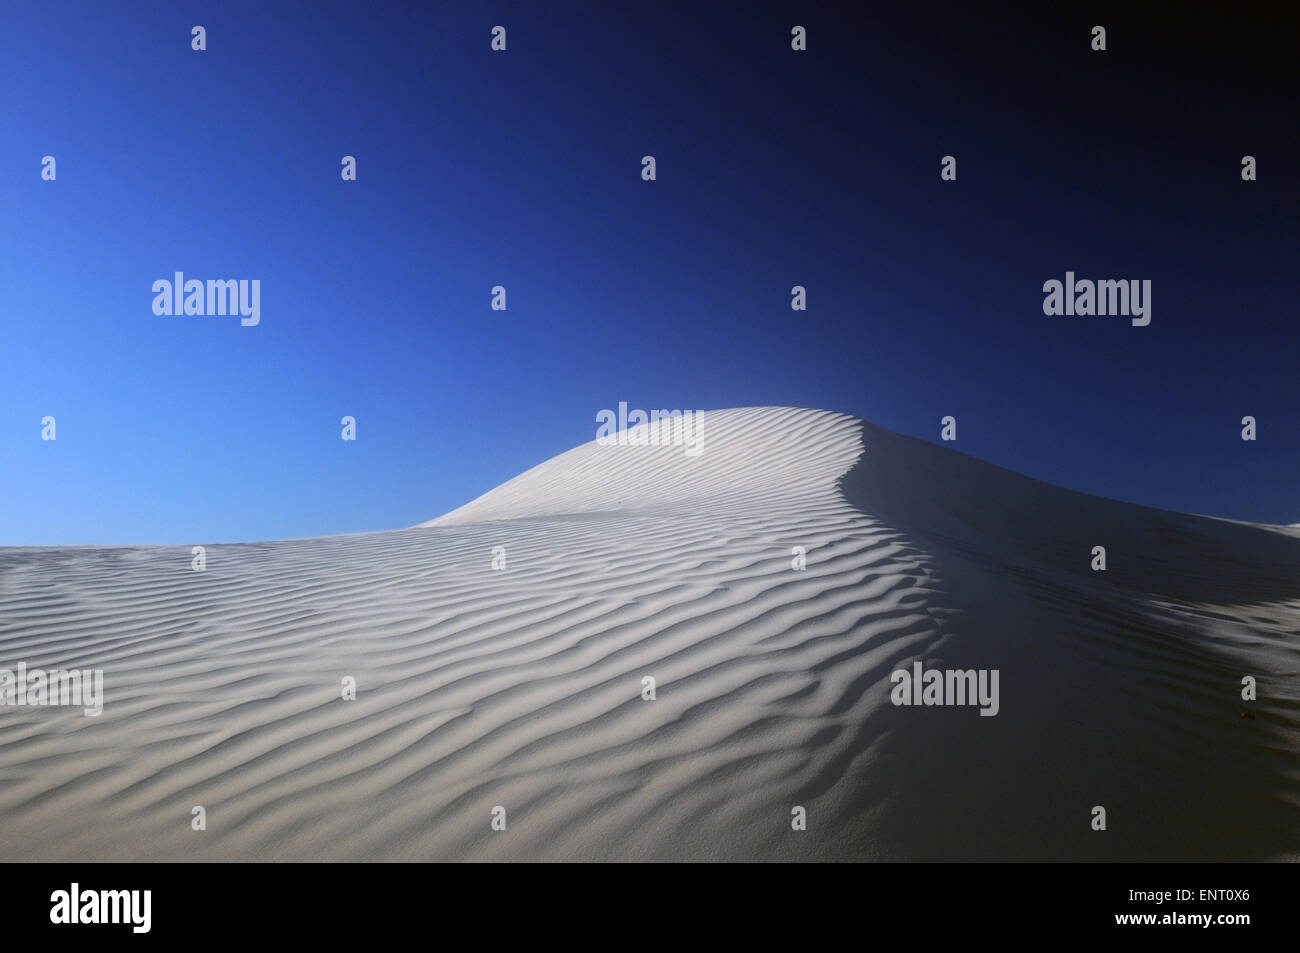 Dunes de sable blanc érodés par le vent près de la côte de l'Océan Indien, le Parc National de Nambung, Australie occidentale Banque D'Images